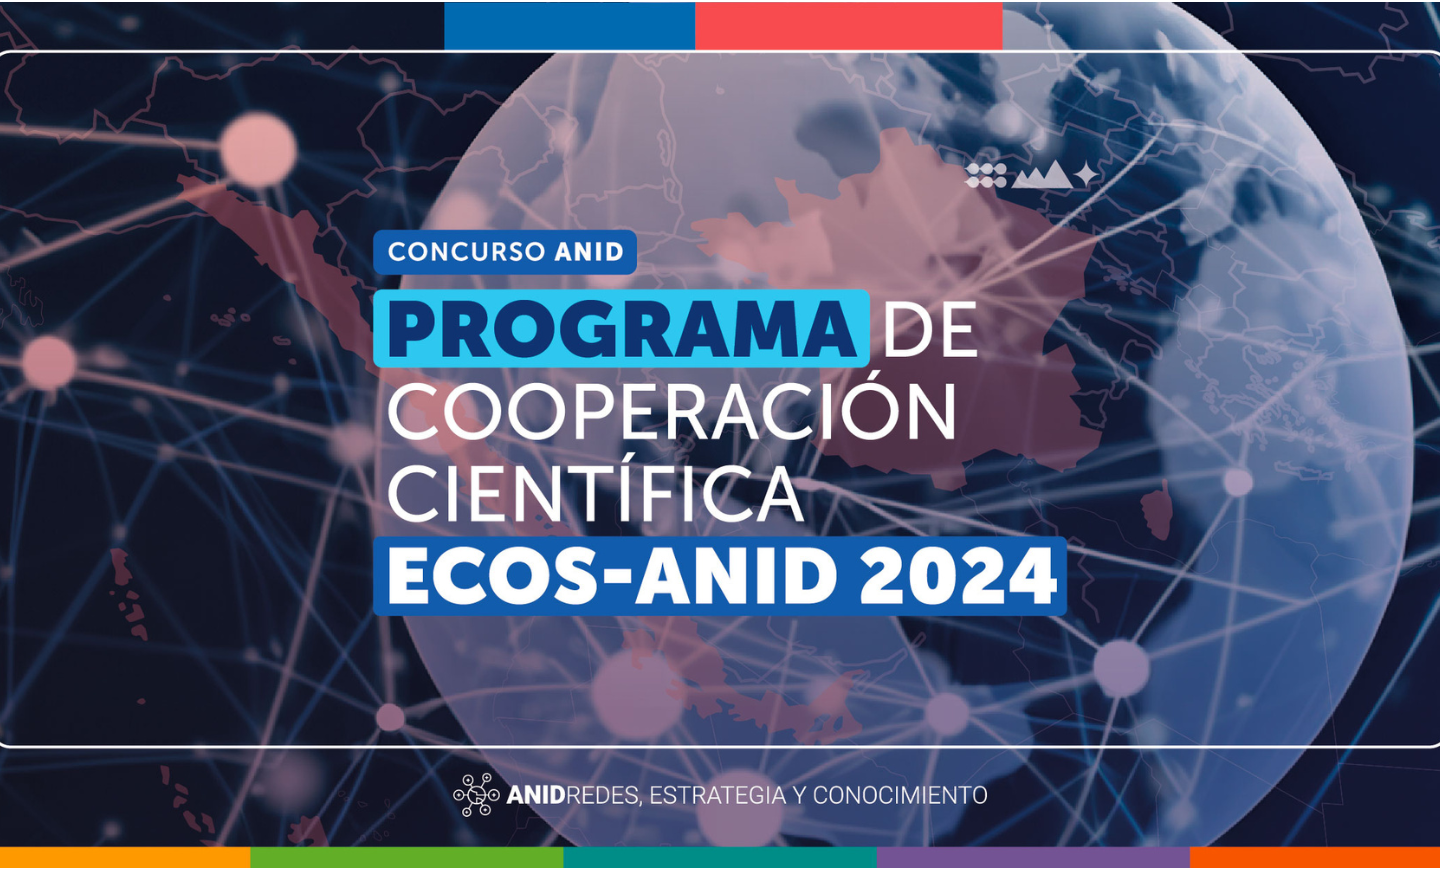 Programme ECOS-ANID 2024: appel à candidatures ouvert